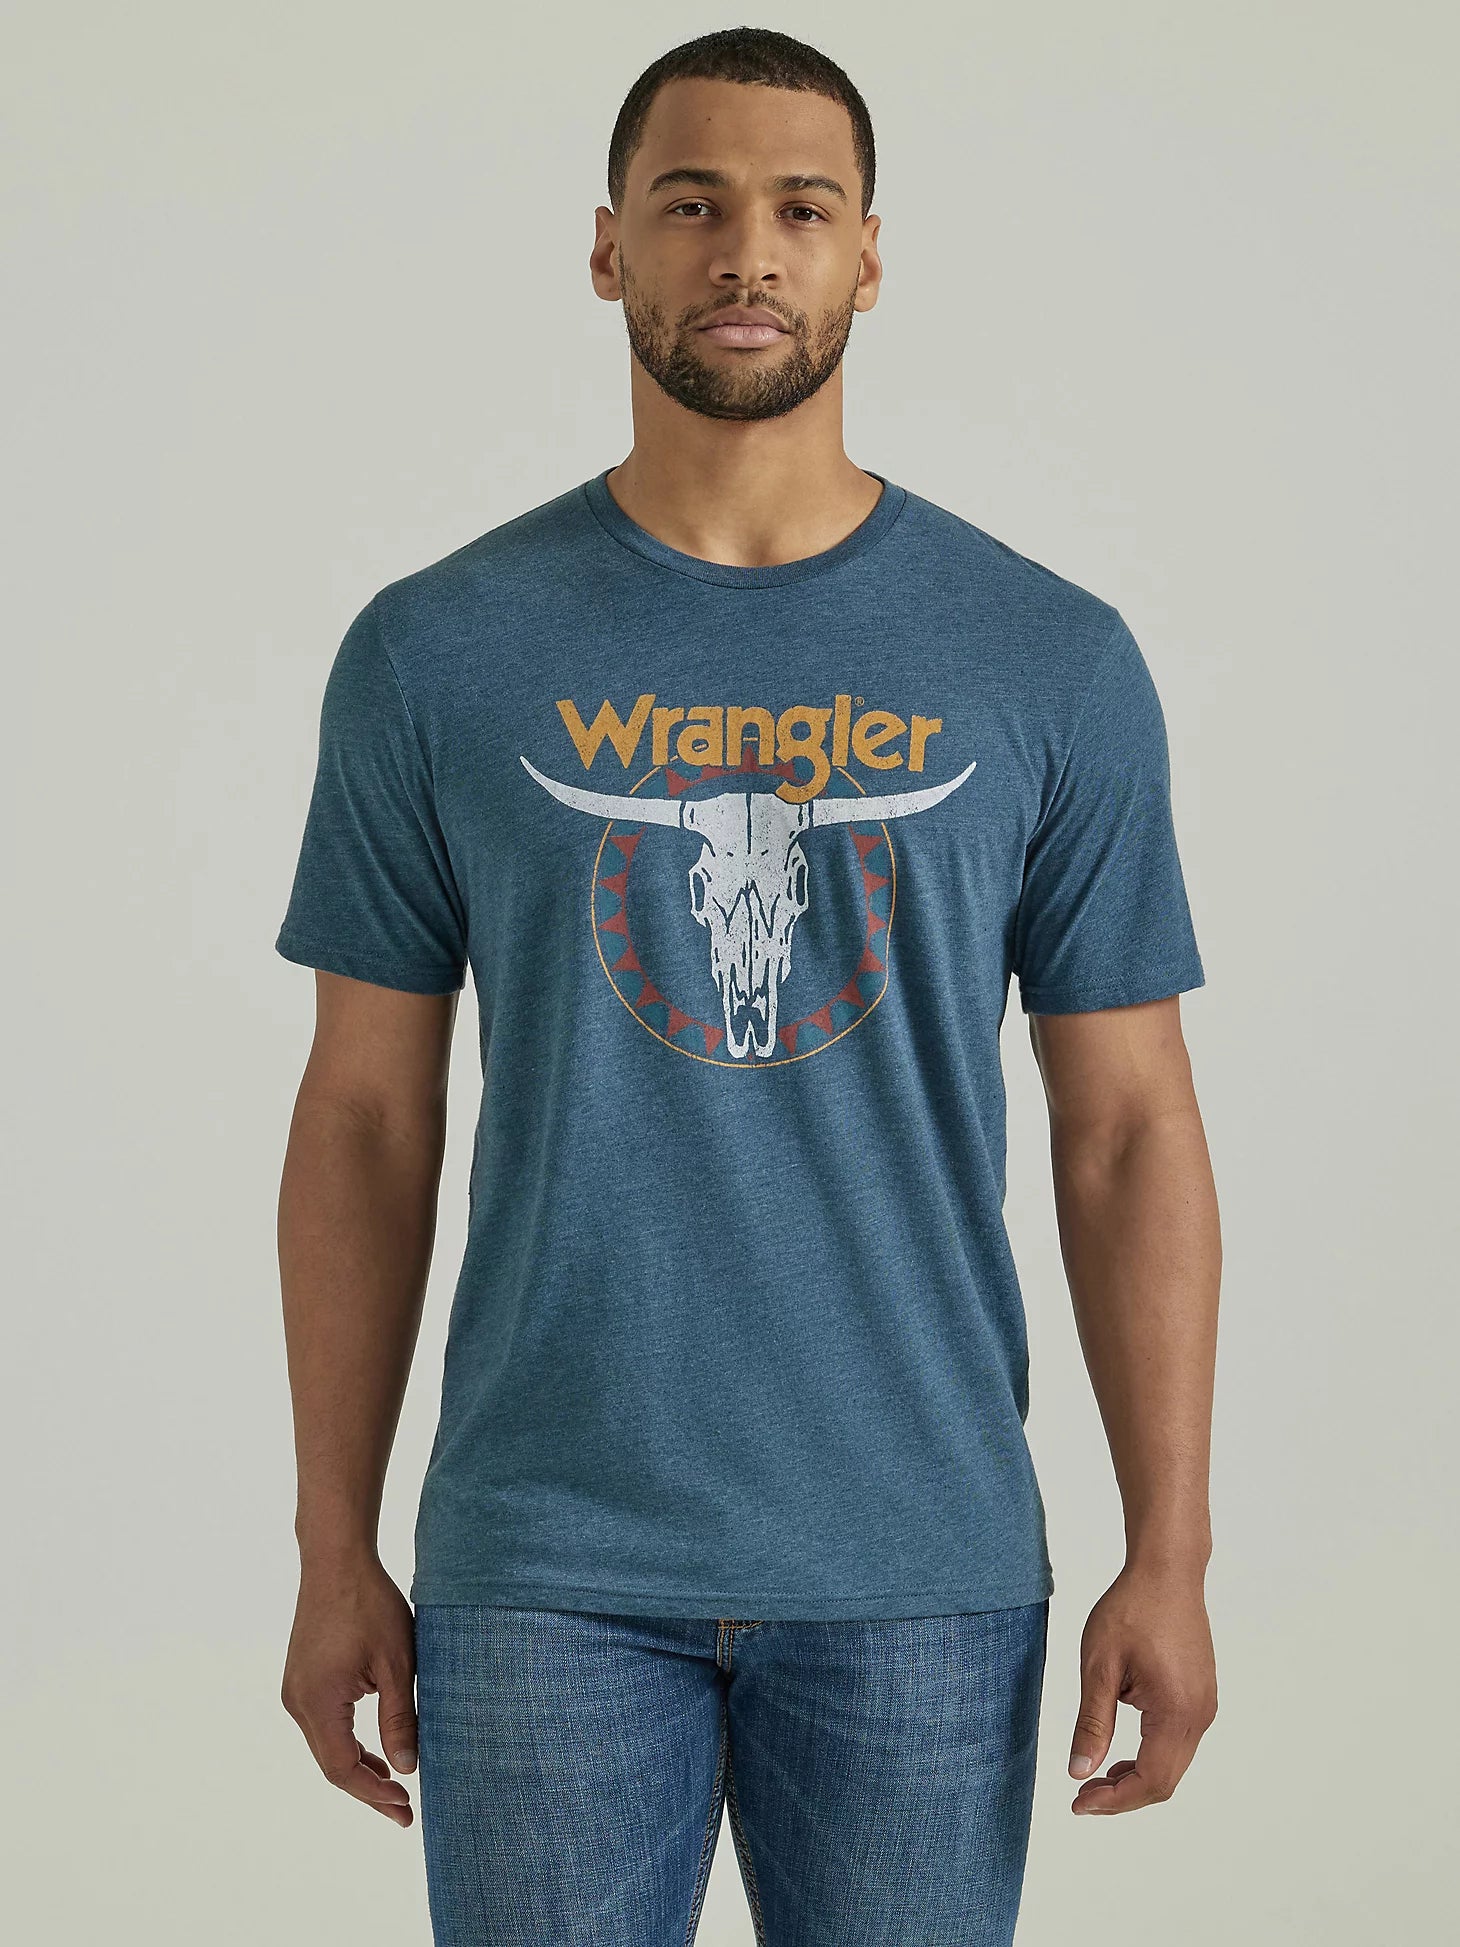 Wrangler Men's Short Sleeve Shirt STYLE 112346554